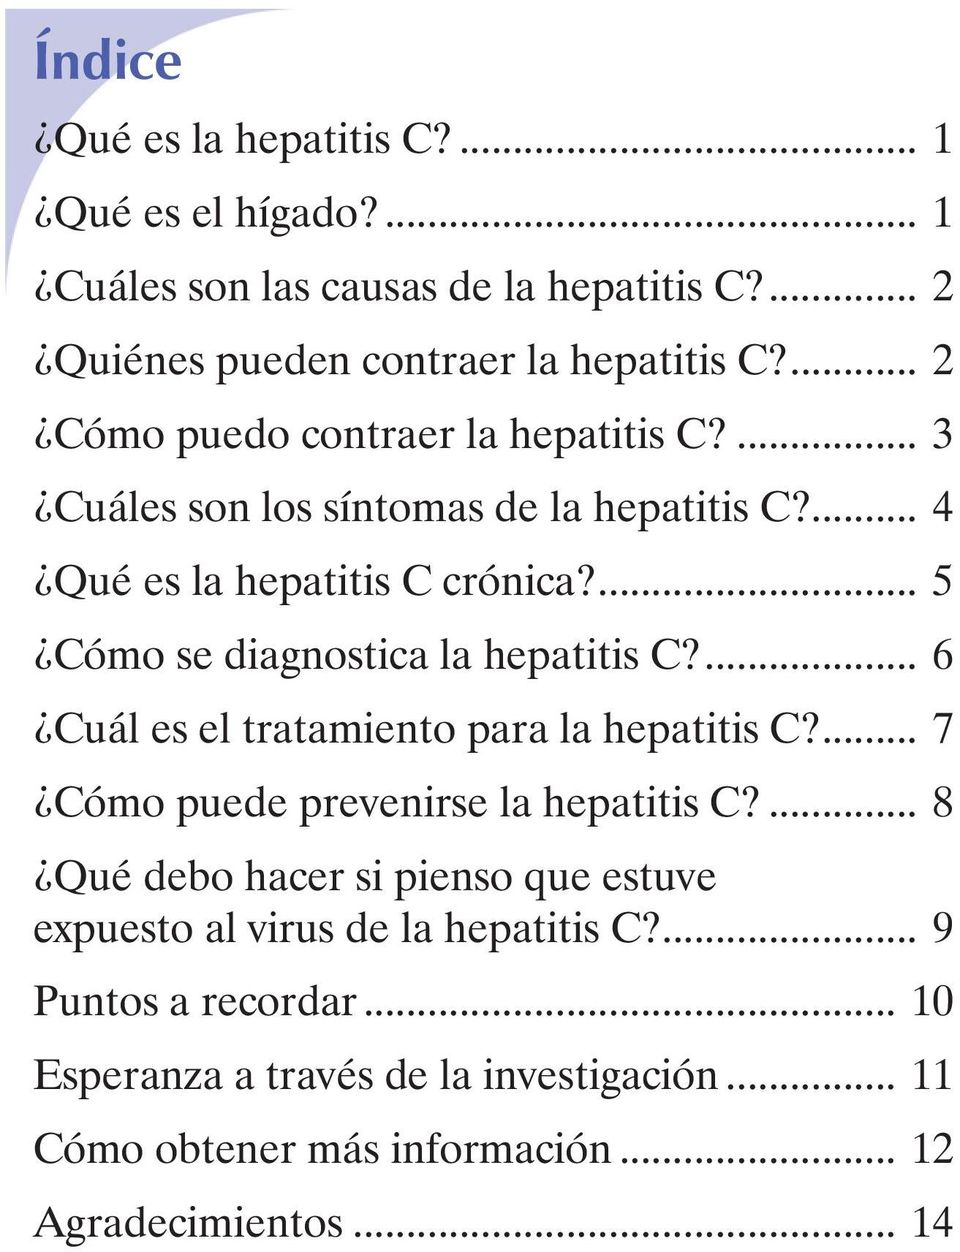 ... 5 Cómo se diagnostica la hepatitis C?... 6 Cuál es el tratamiento para la hepatitis C?... 7 Cómo puede prevenirse la hepatitis C?